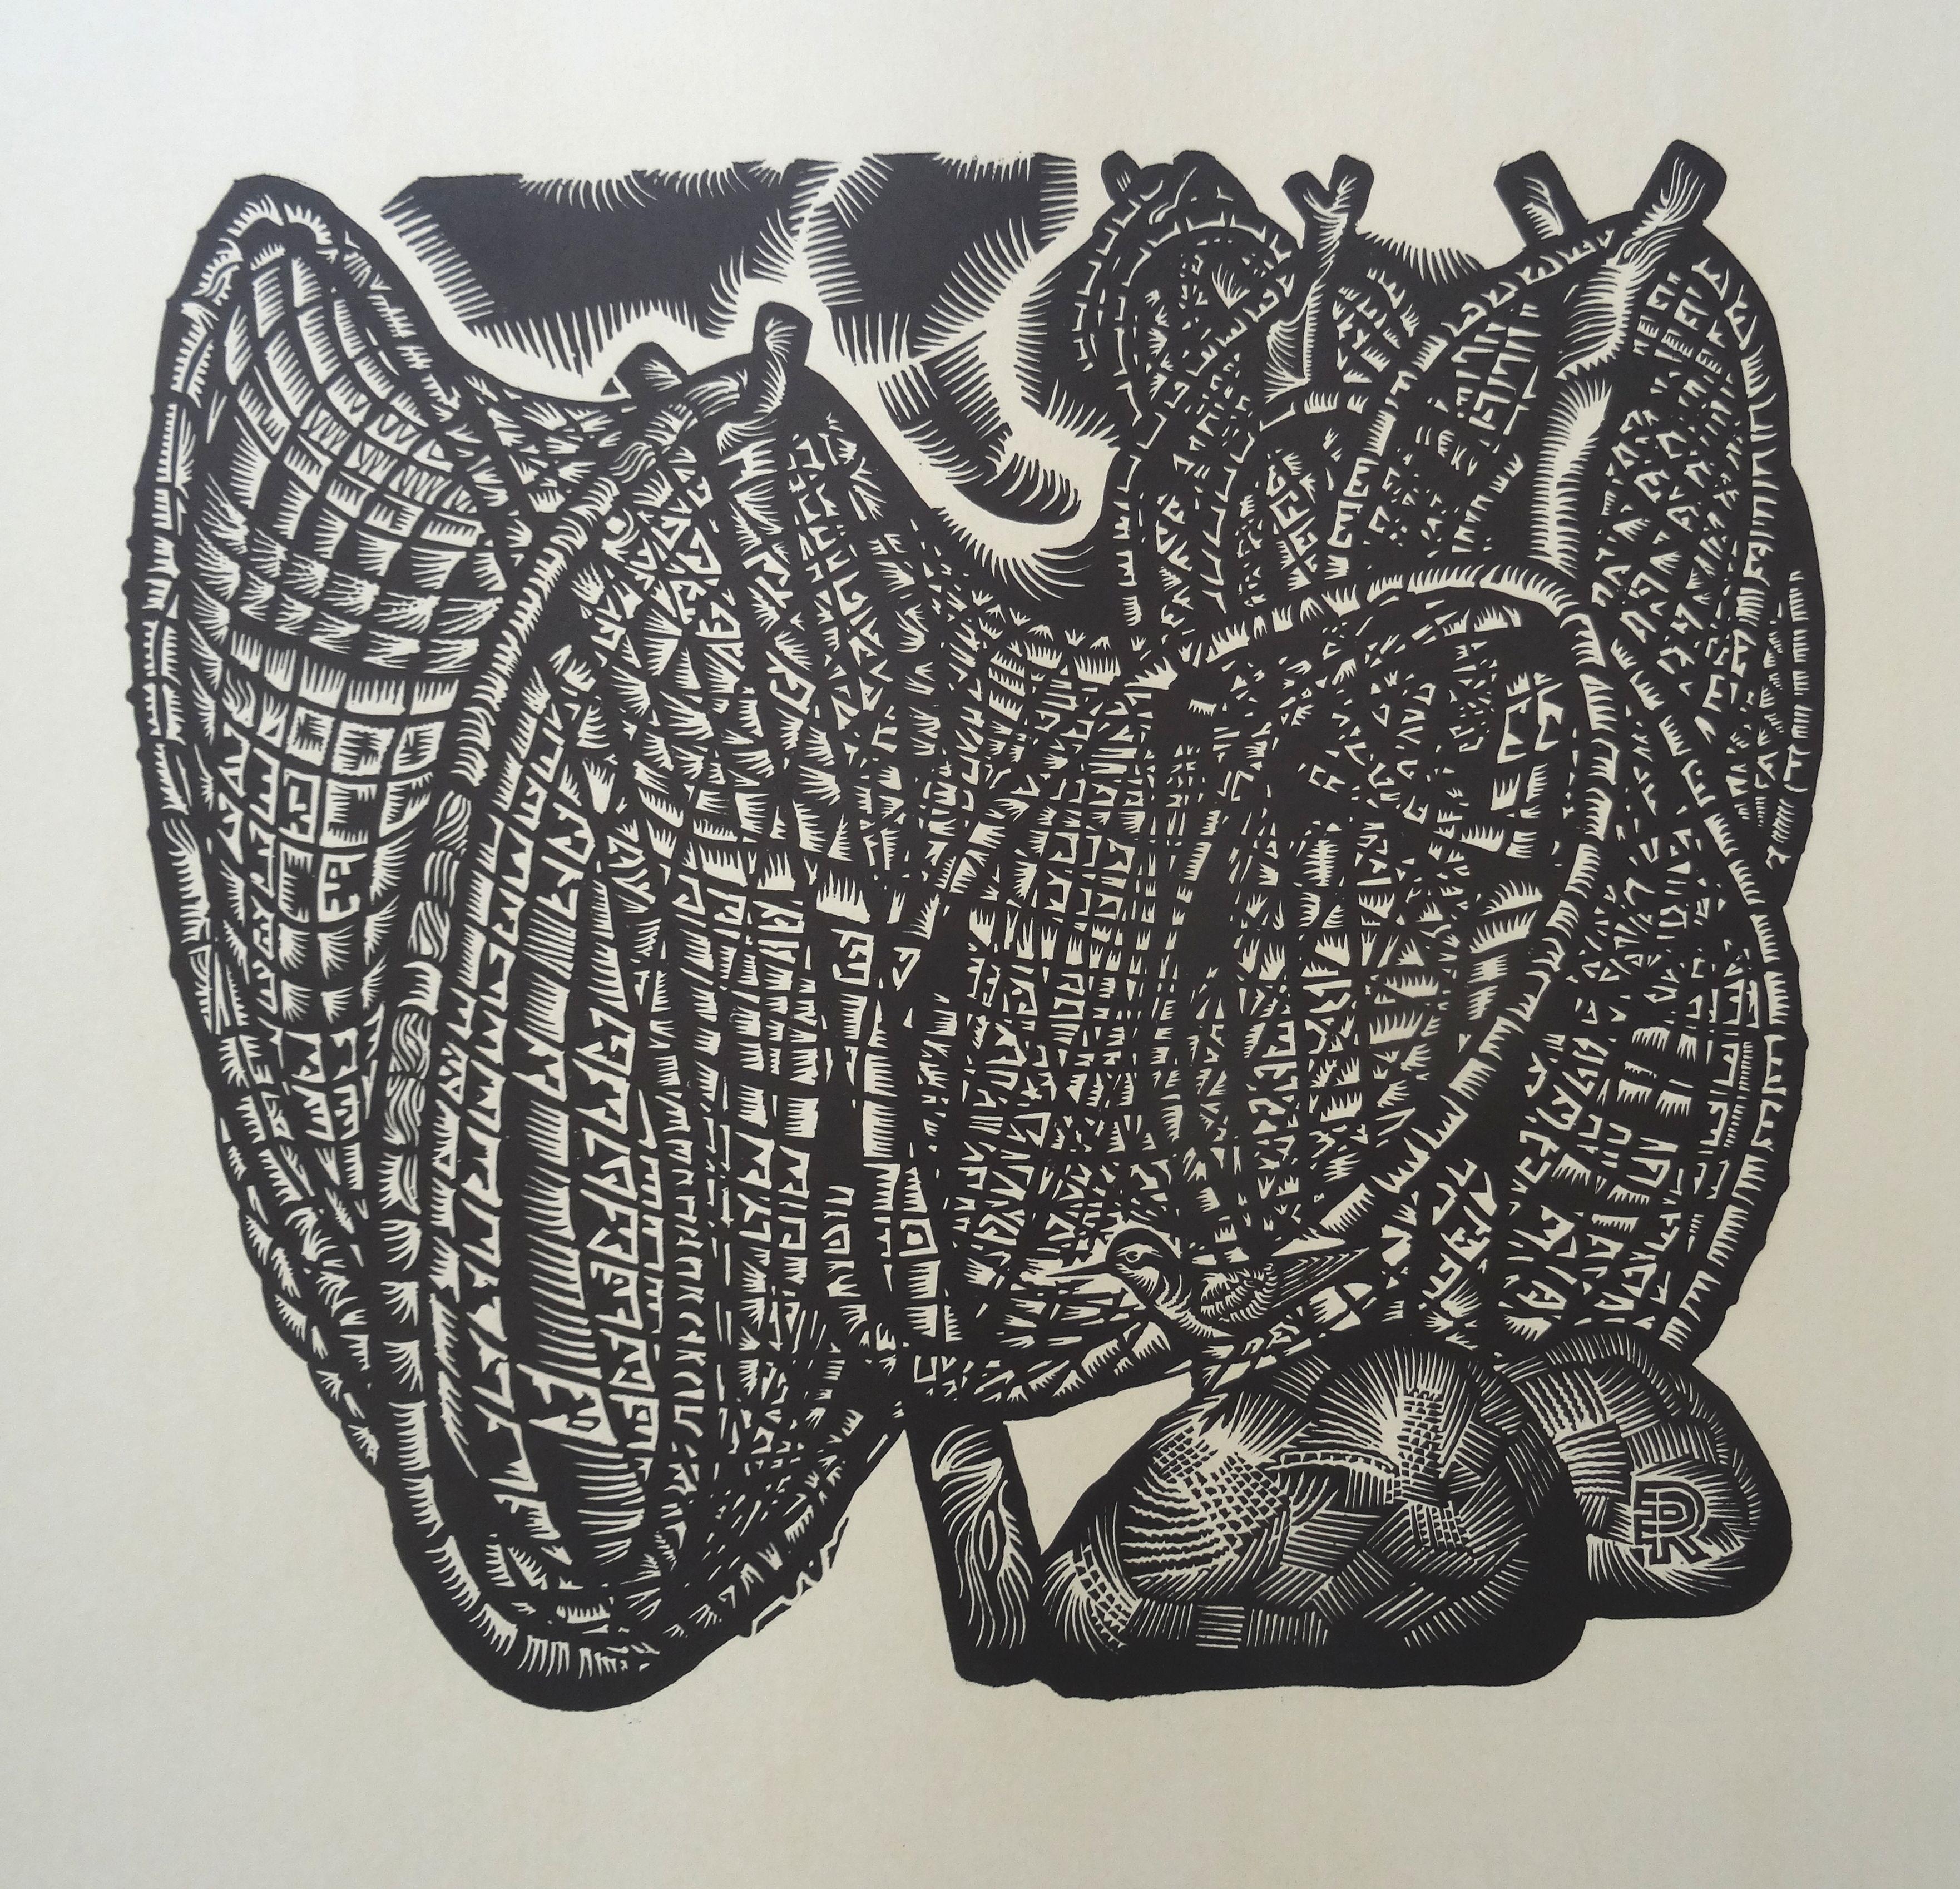 Piège à sable vert oiseau. 1976, papier, linogravure, 80 x65 cm